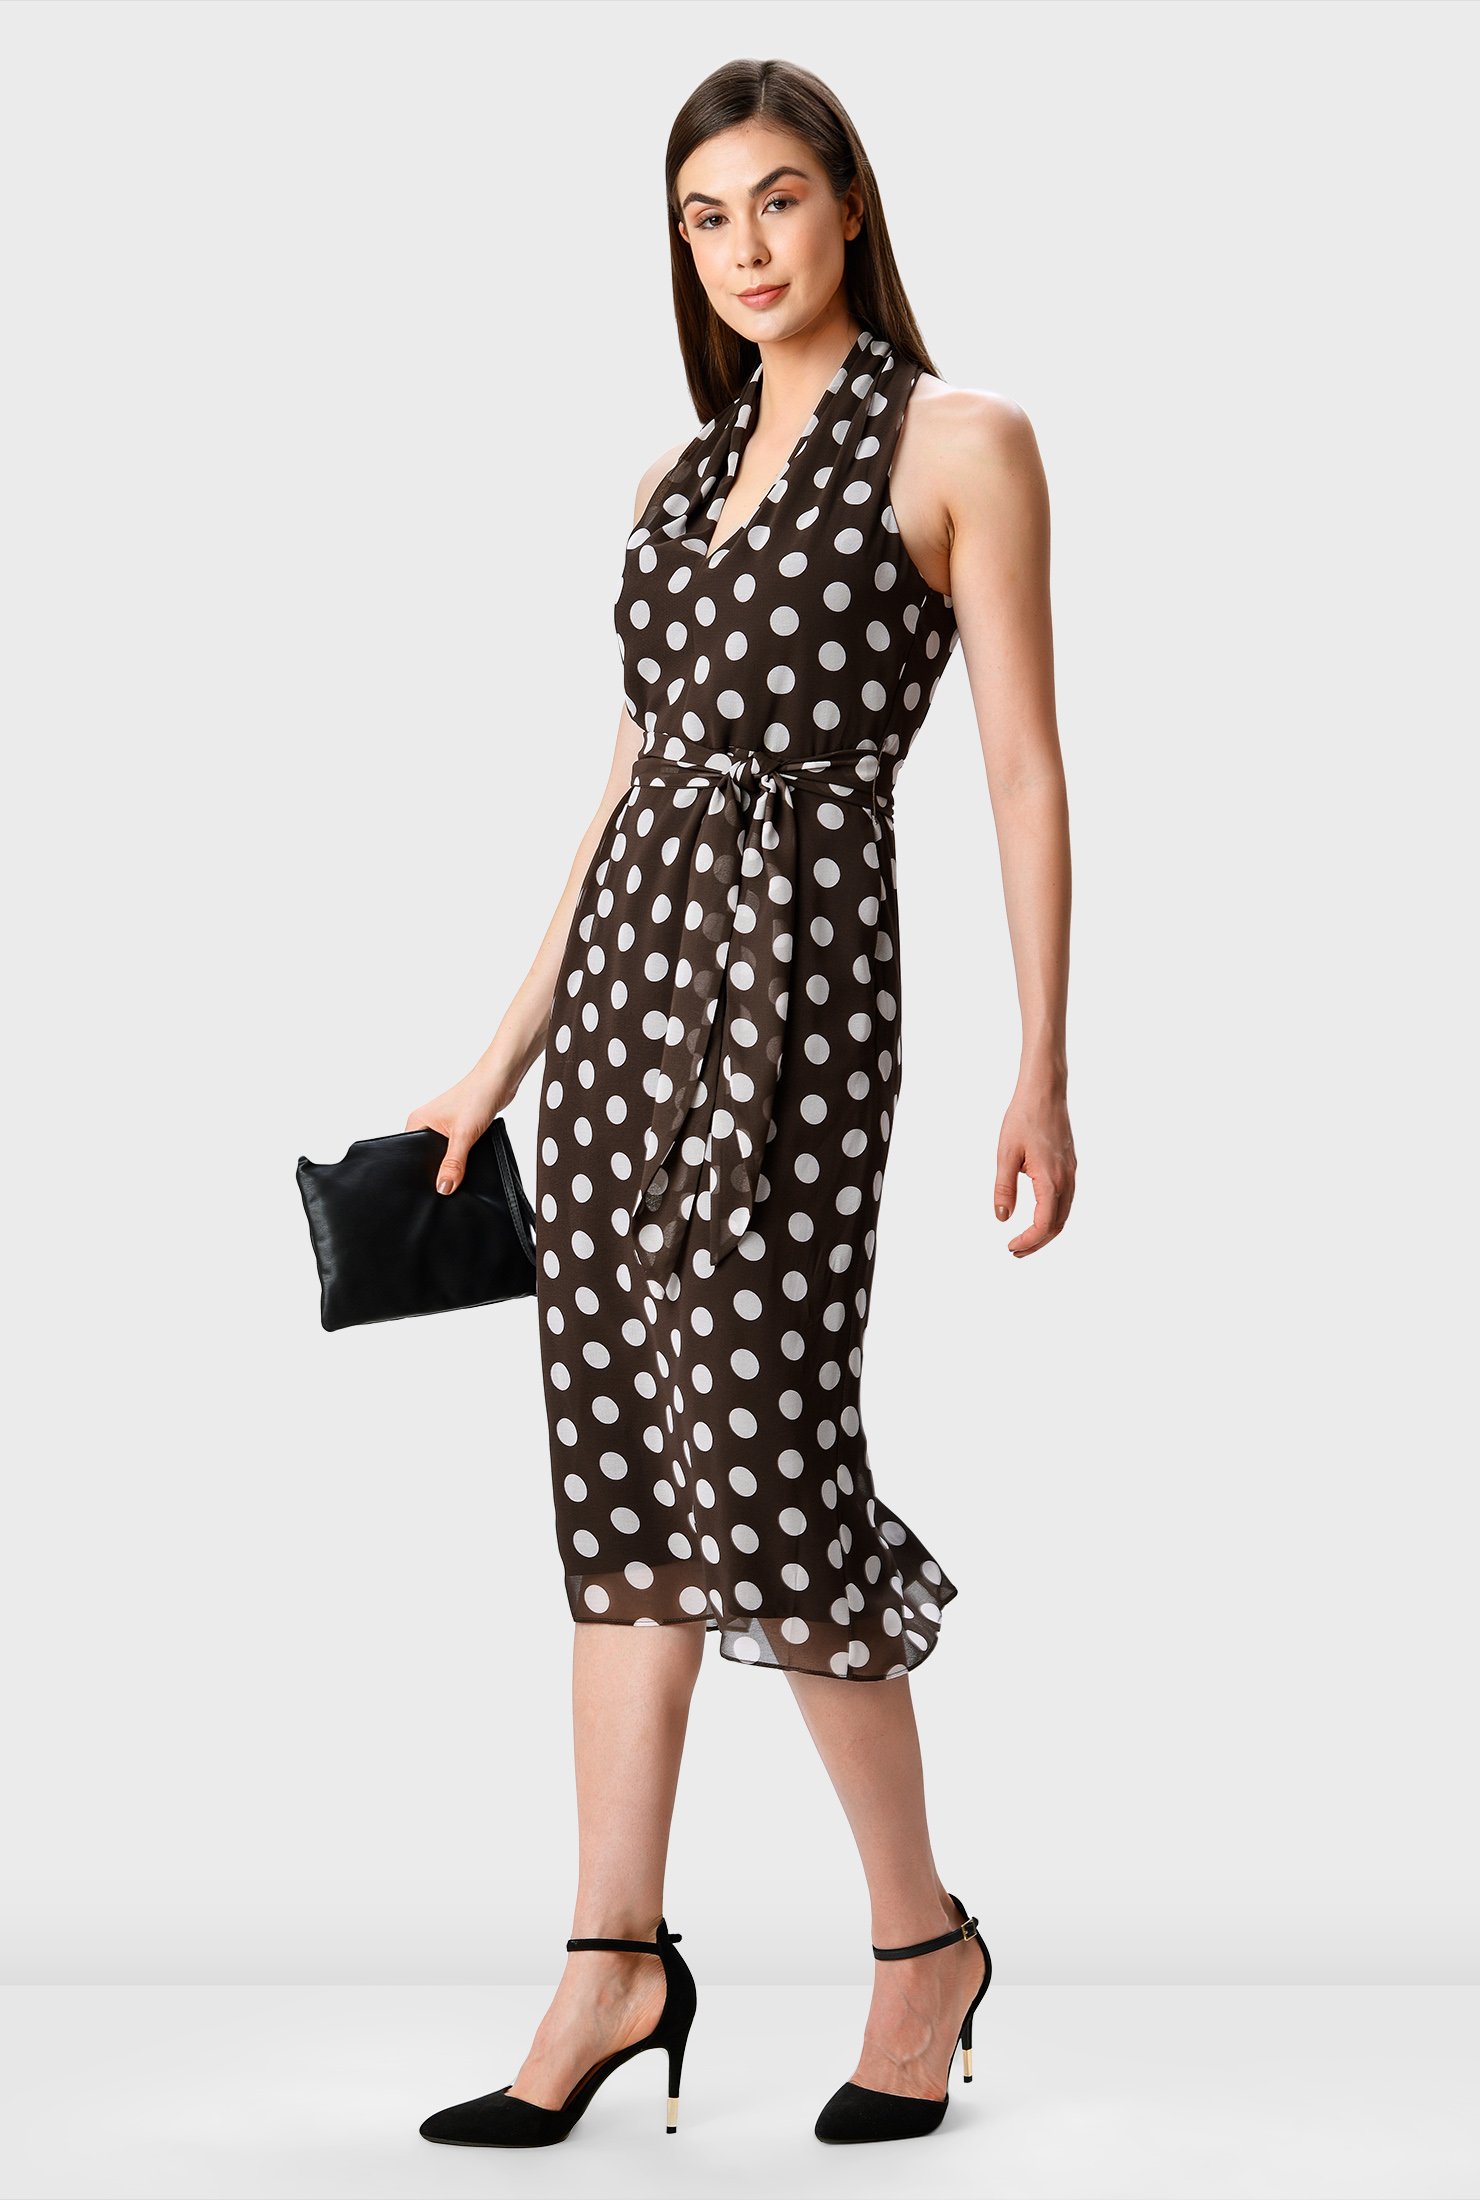 Shop Polka dot print halter sheath dress | eShakti